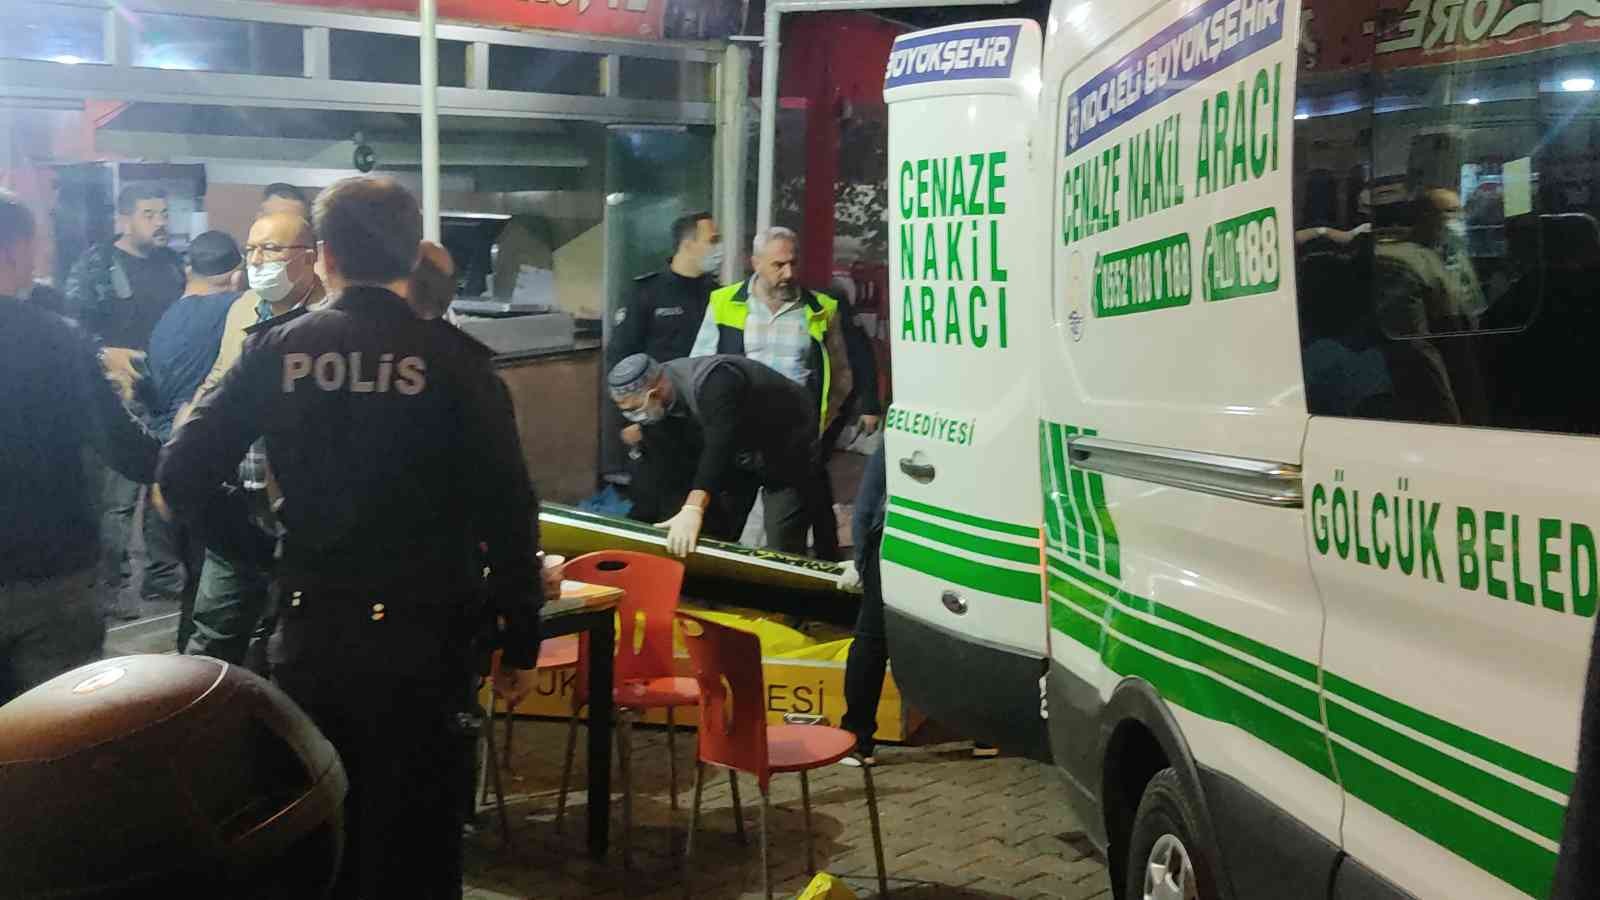 Kahvehaneden beraber çıktığı arkadaşını sokak ortasında tüfekle öldürdü #kocaeli